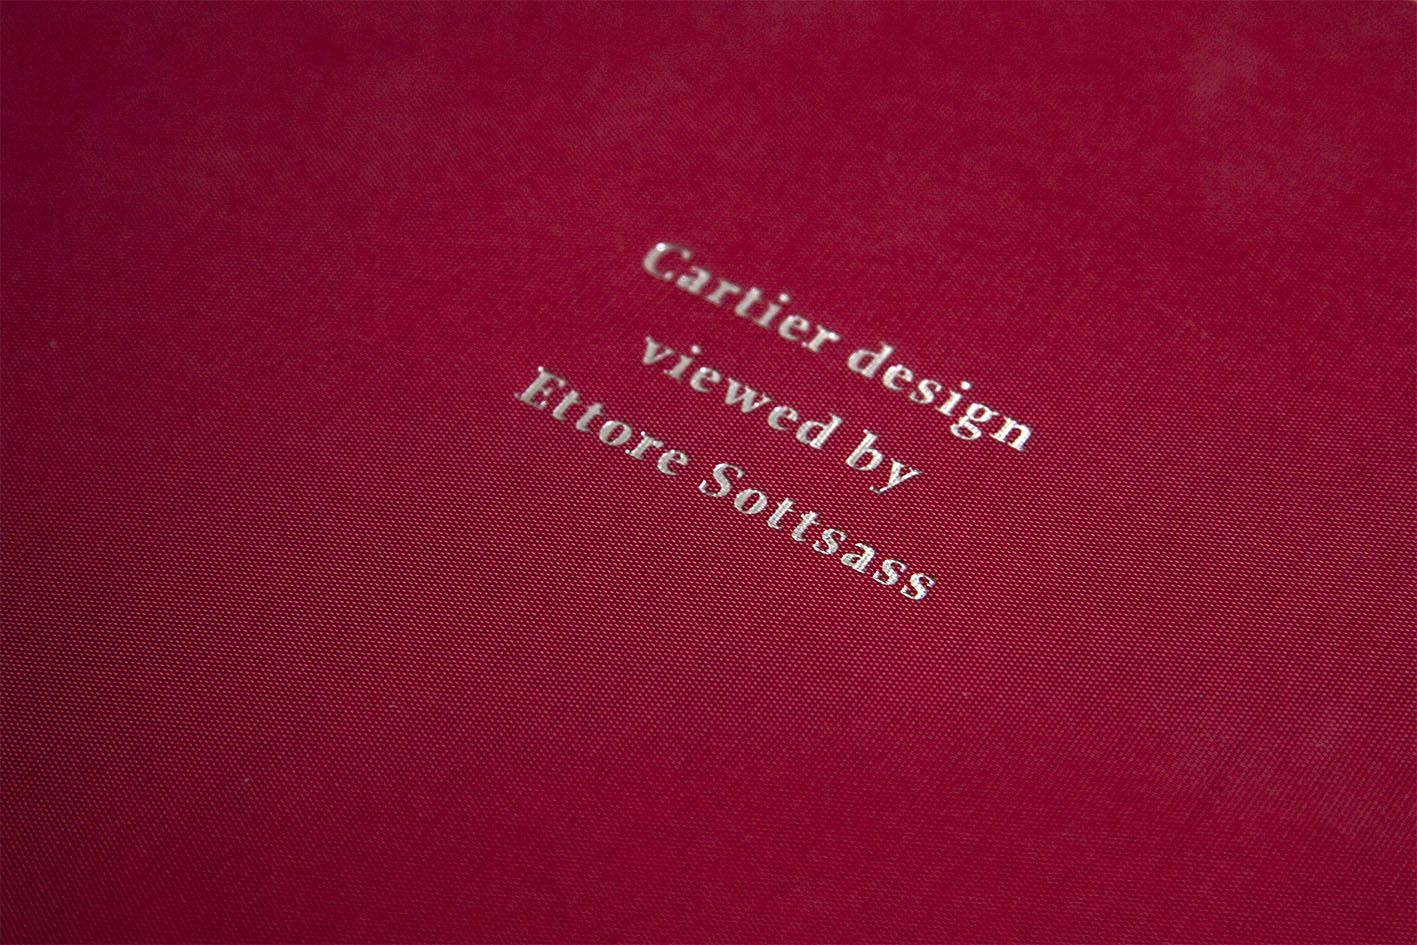 Cartier design viewed by Ettore Sottsass